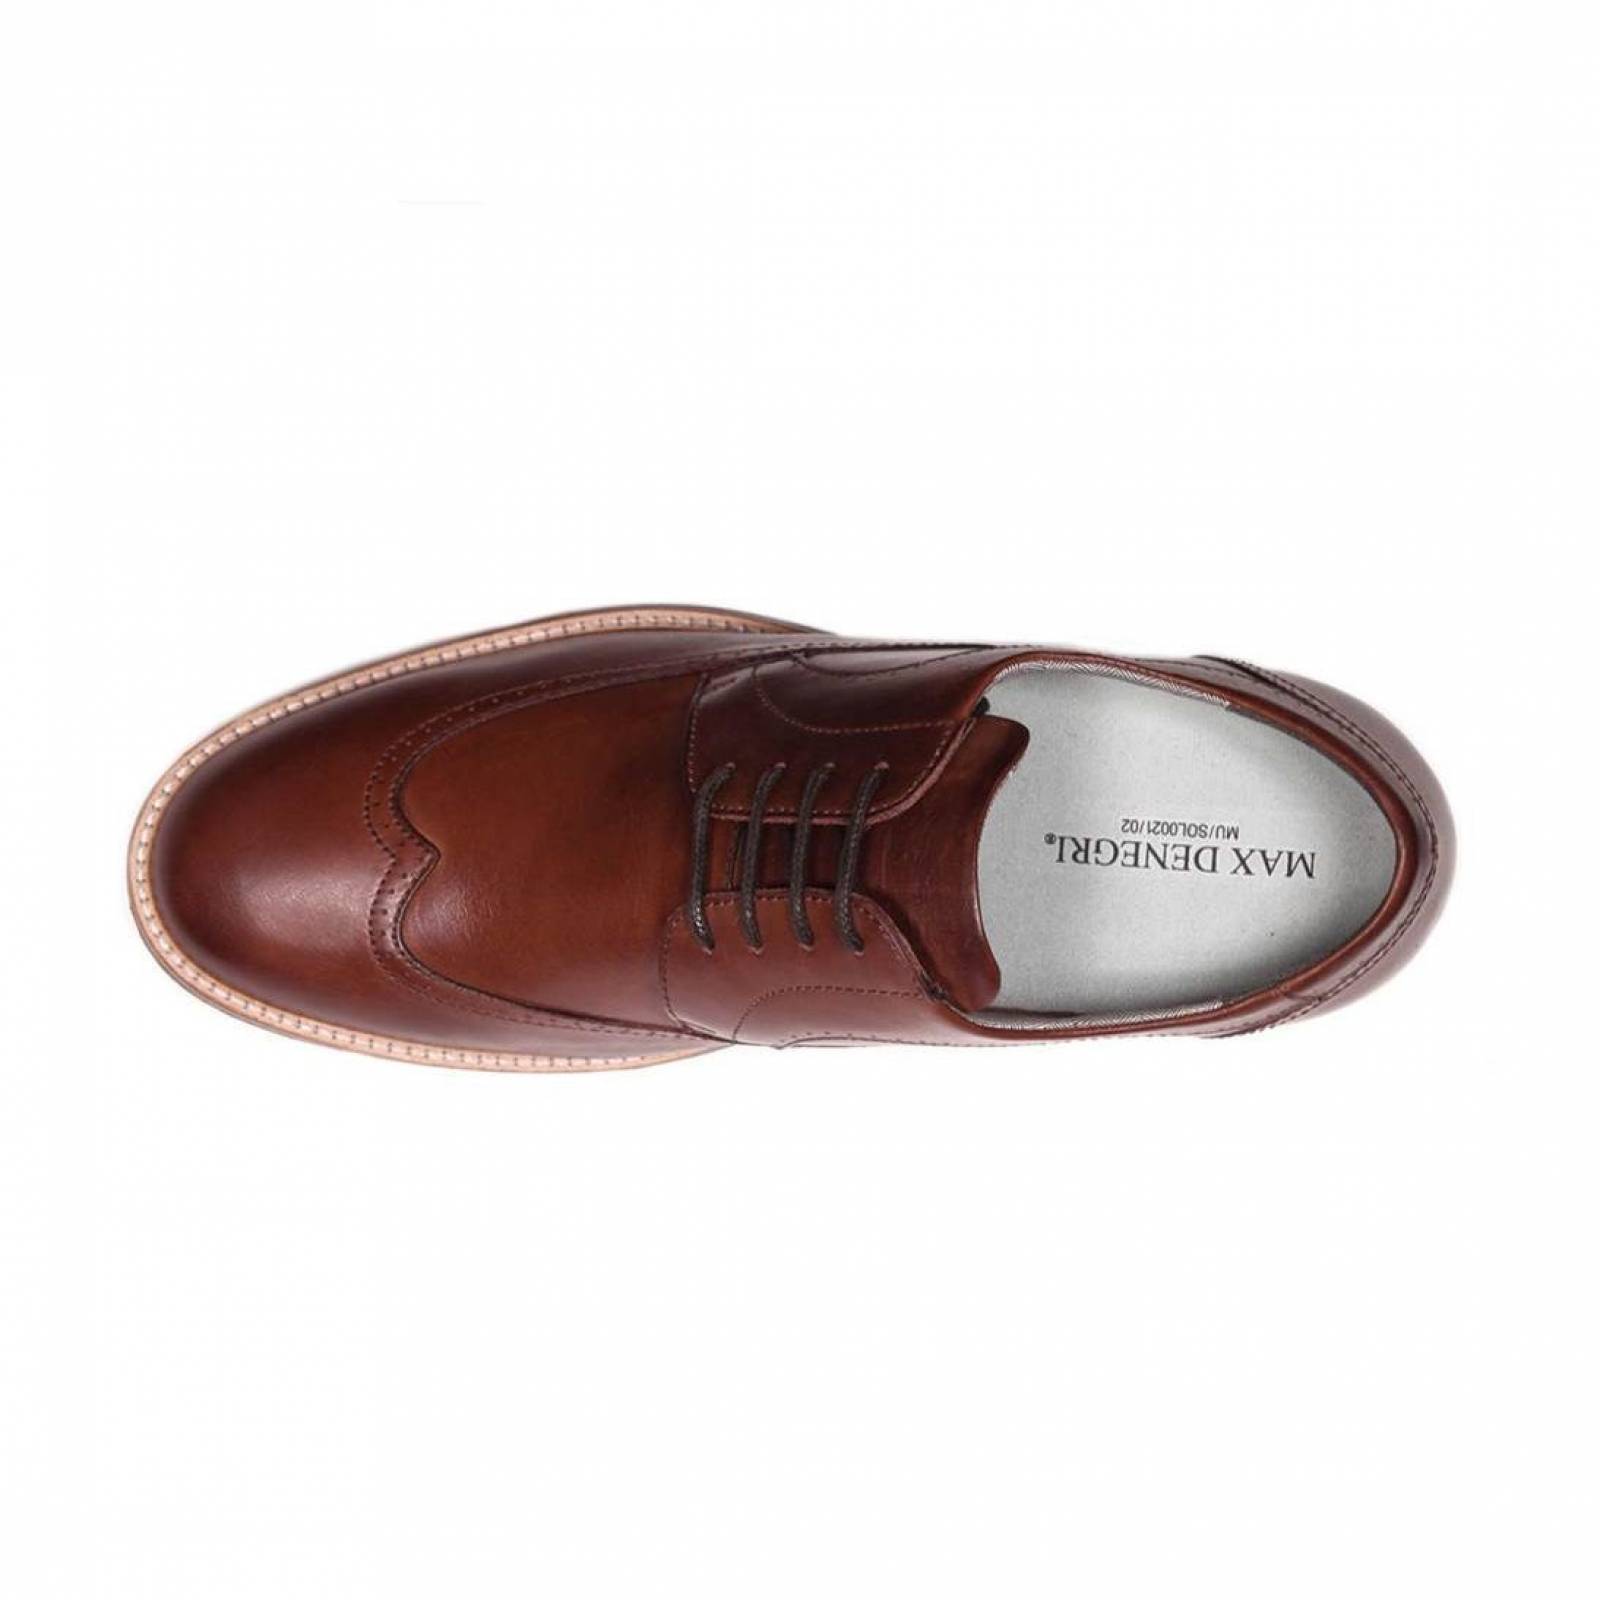 Zapato Casual Oxford Café Oscuro Max Denegri +7cms De Altura